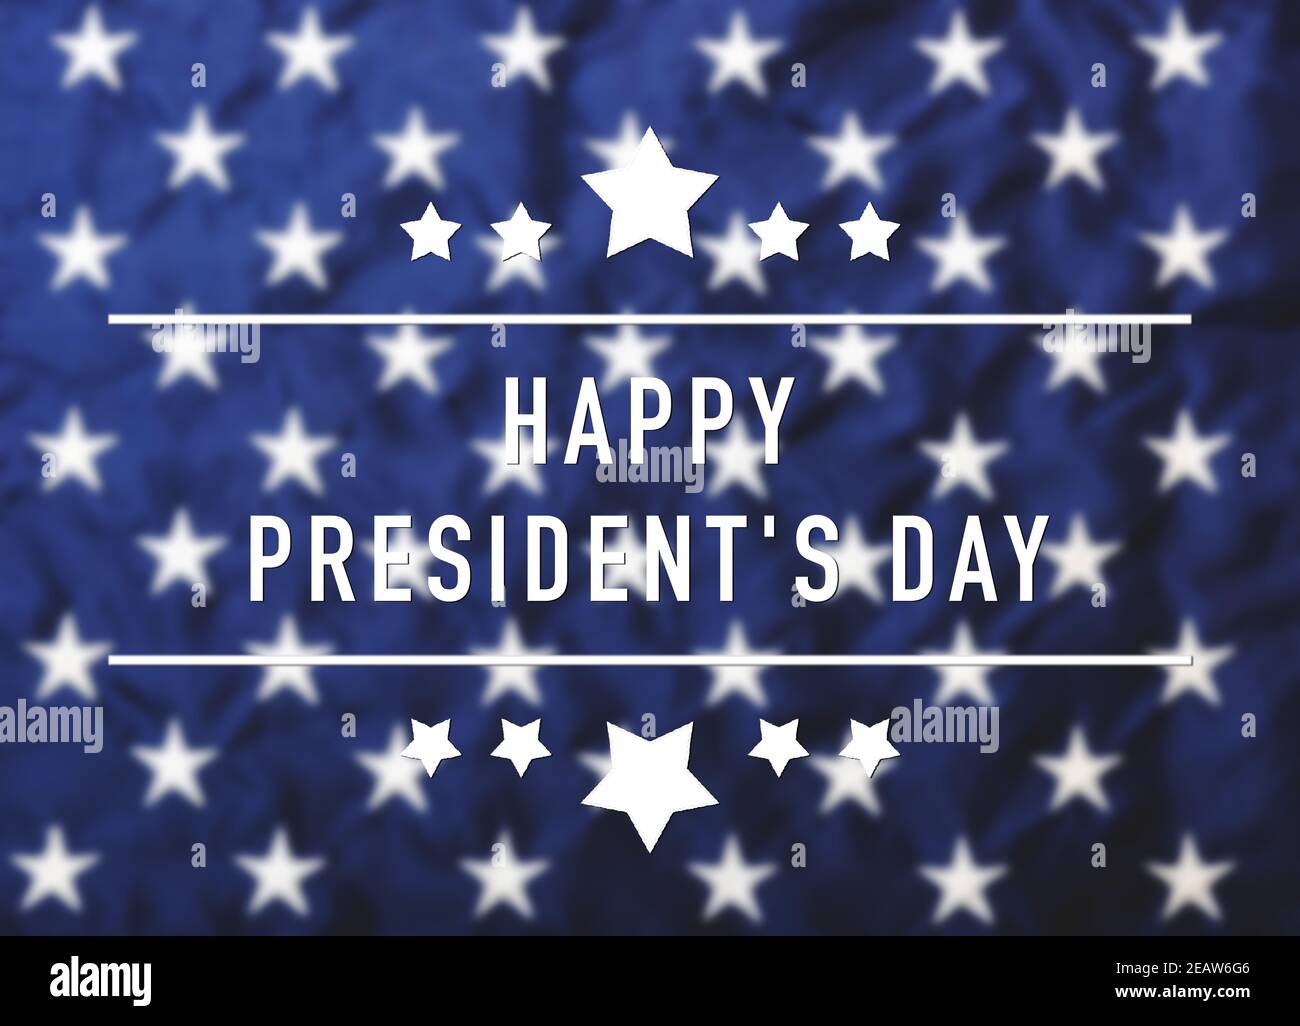 Drapeau américain ou américain avec texte « HAPPY PRESIDENT'S DAY » Banque D'Images